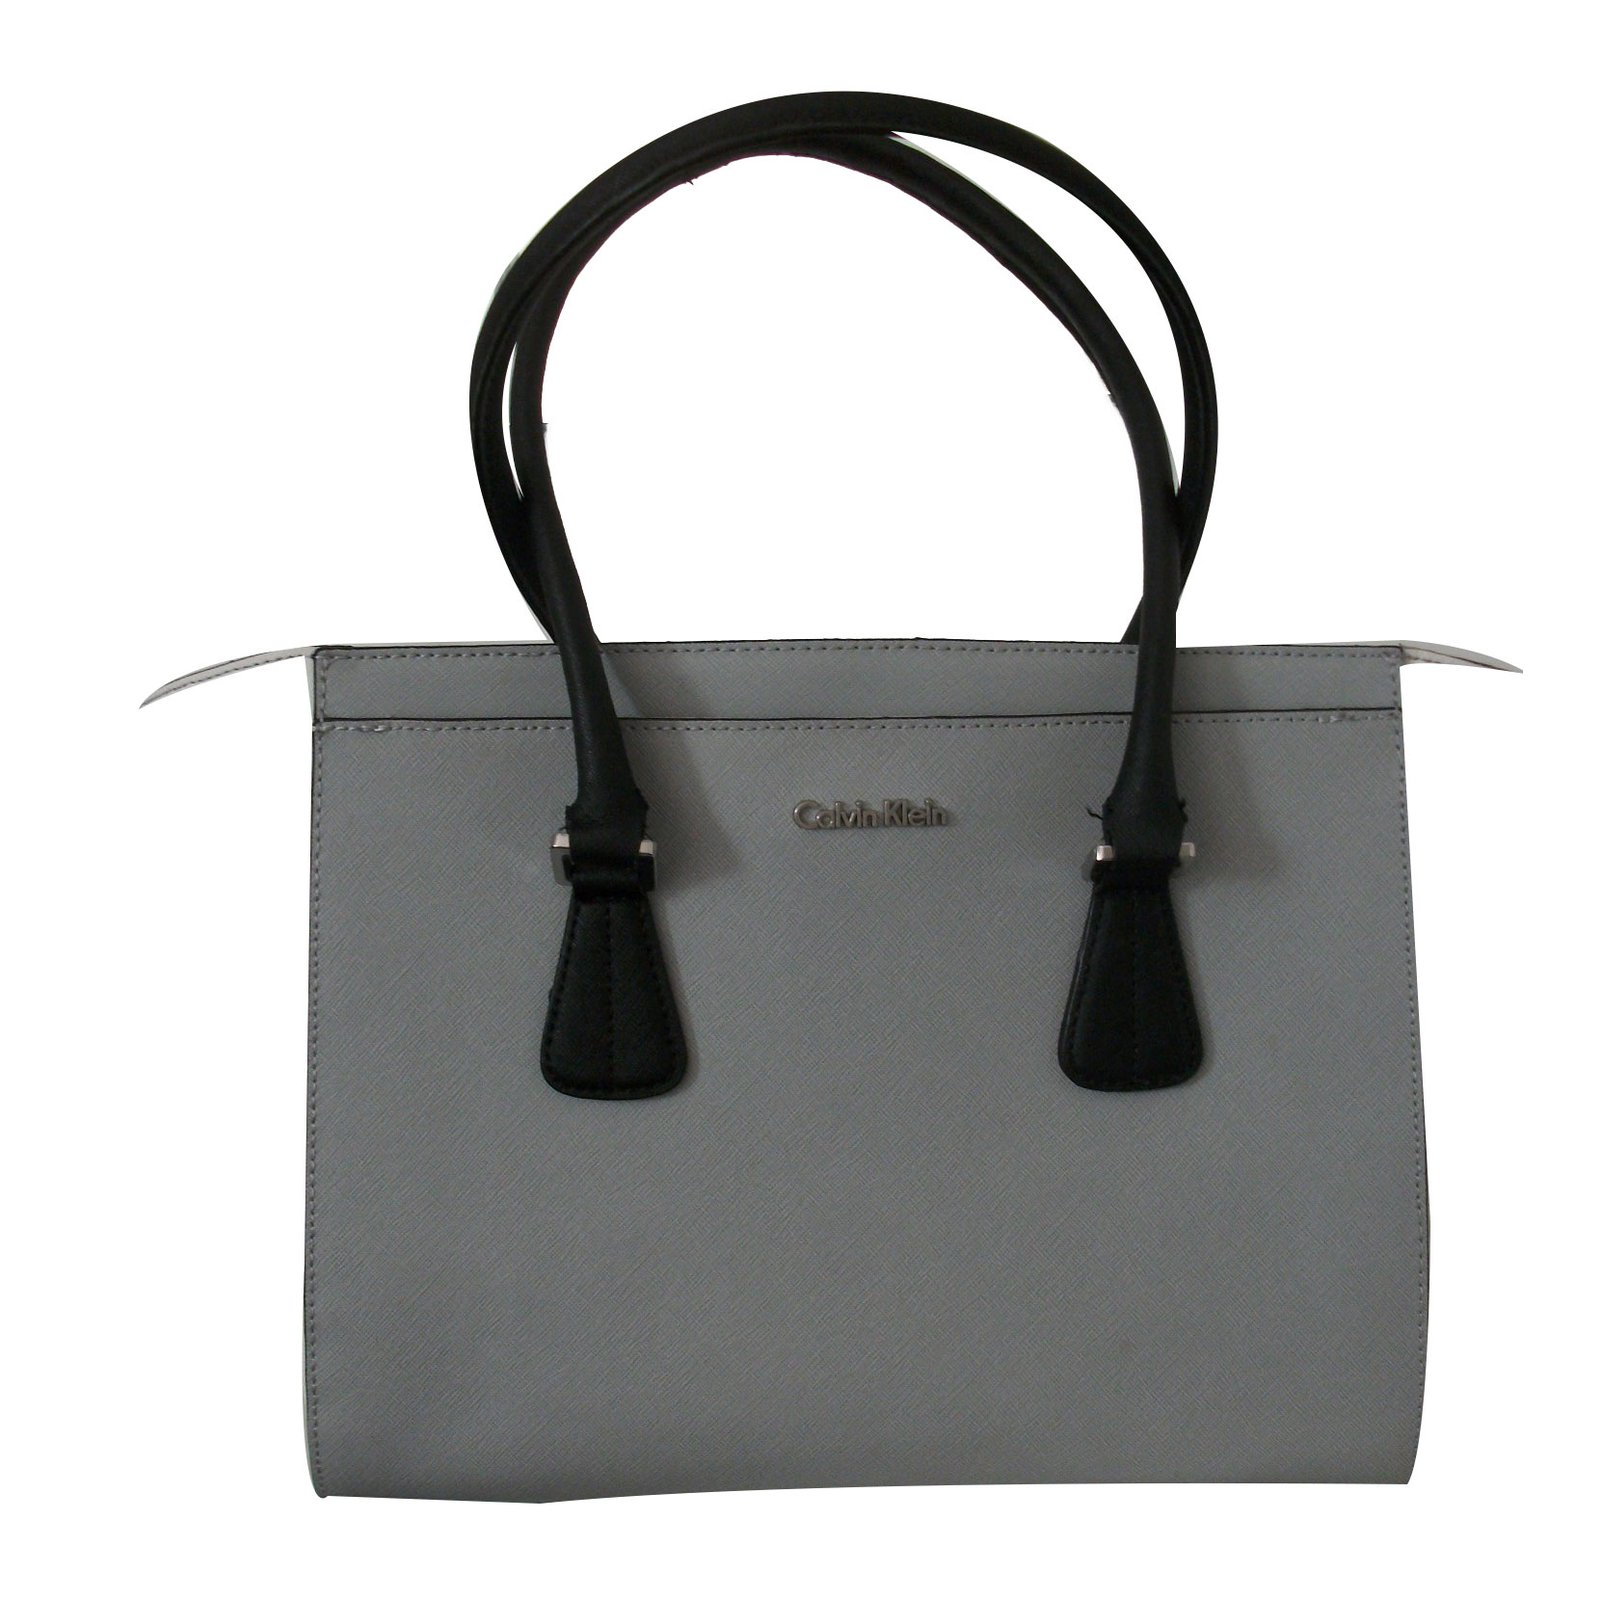 calvin klein grey bag